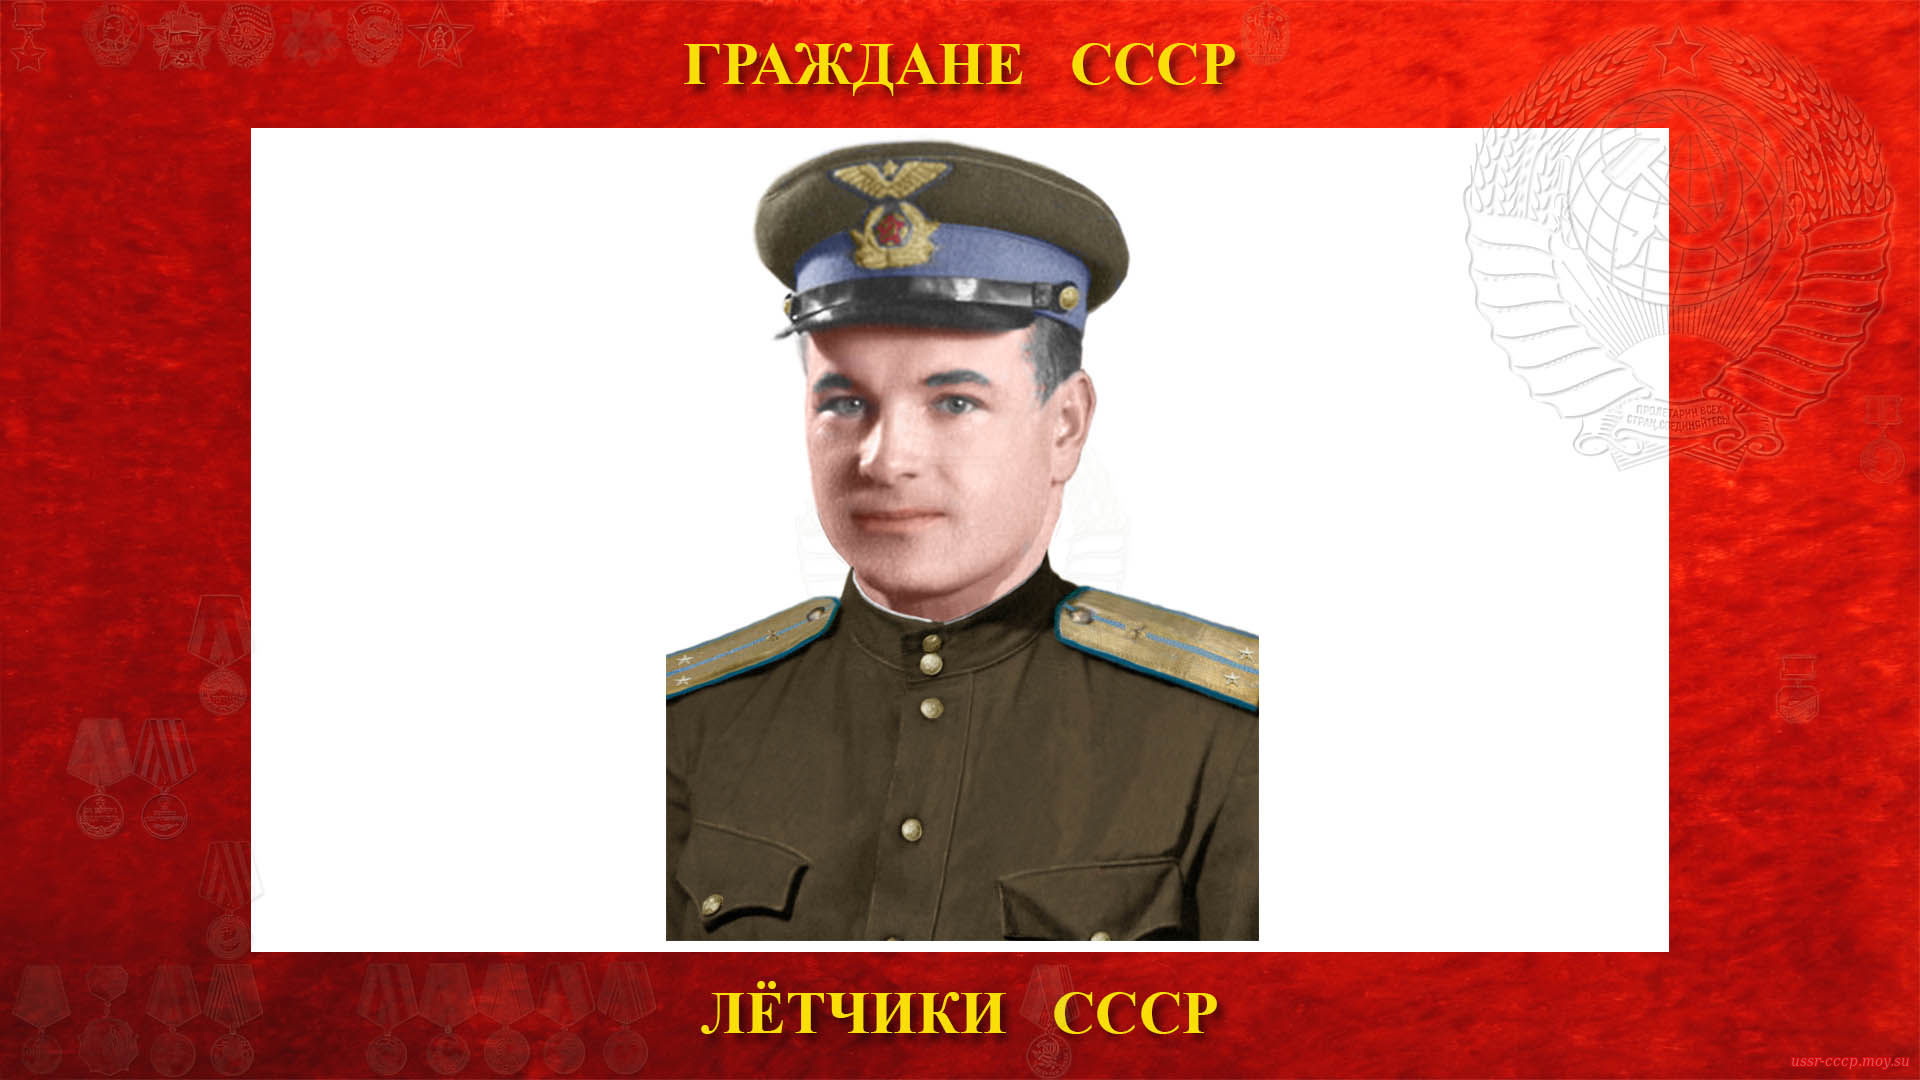 Михайлов Павел Михайлович (биография)